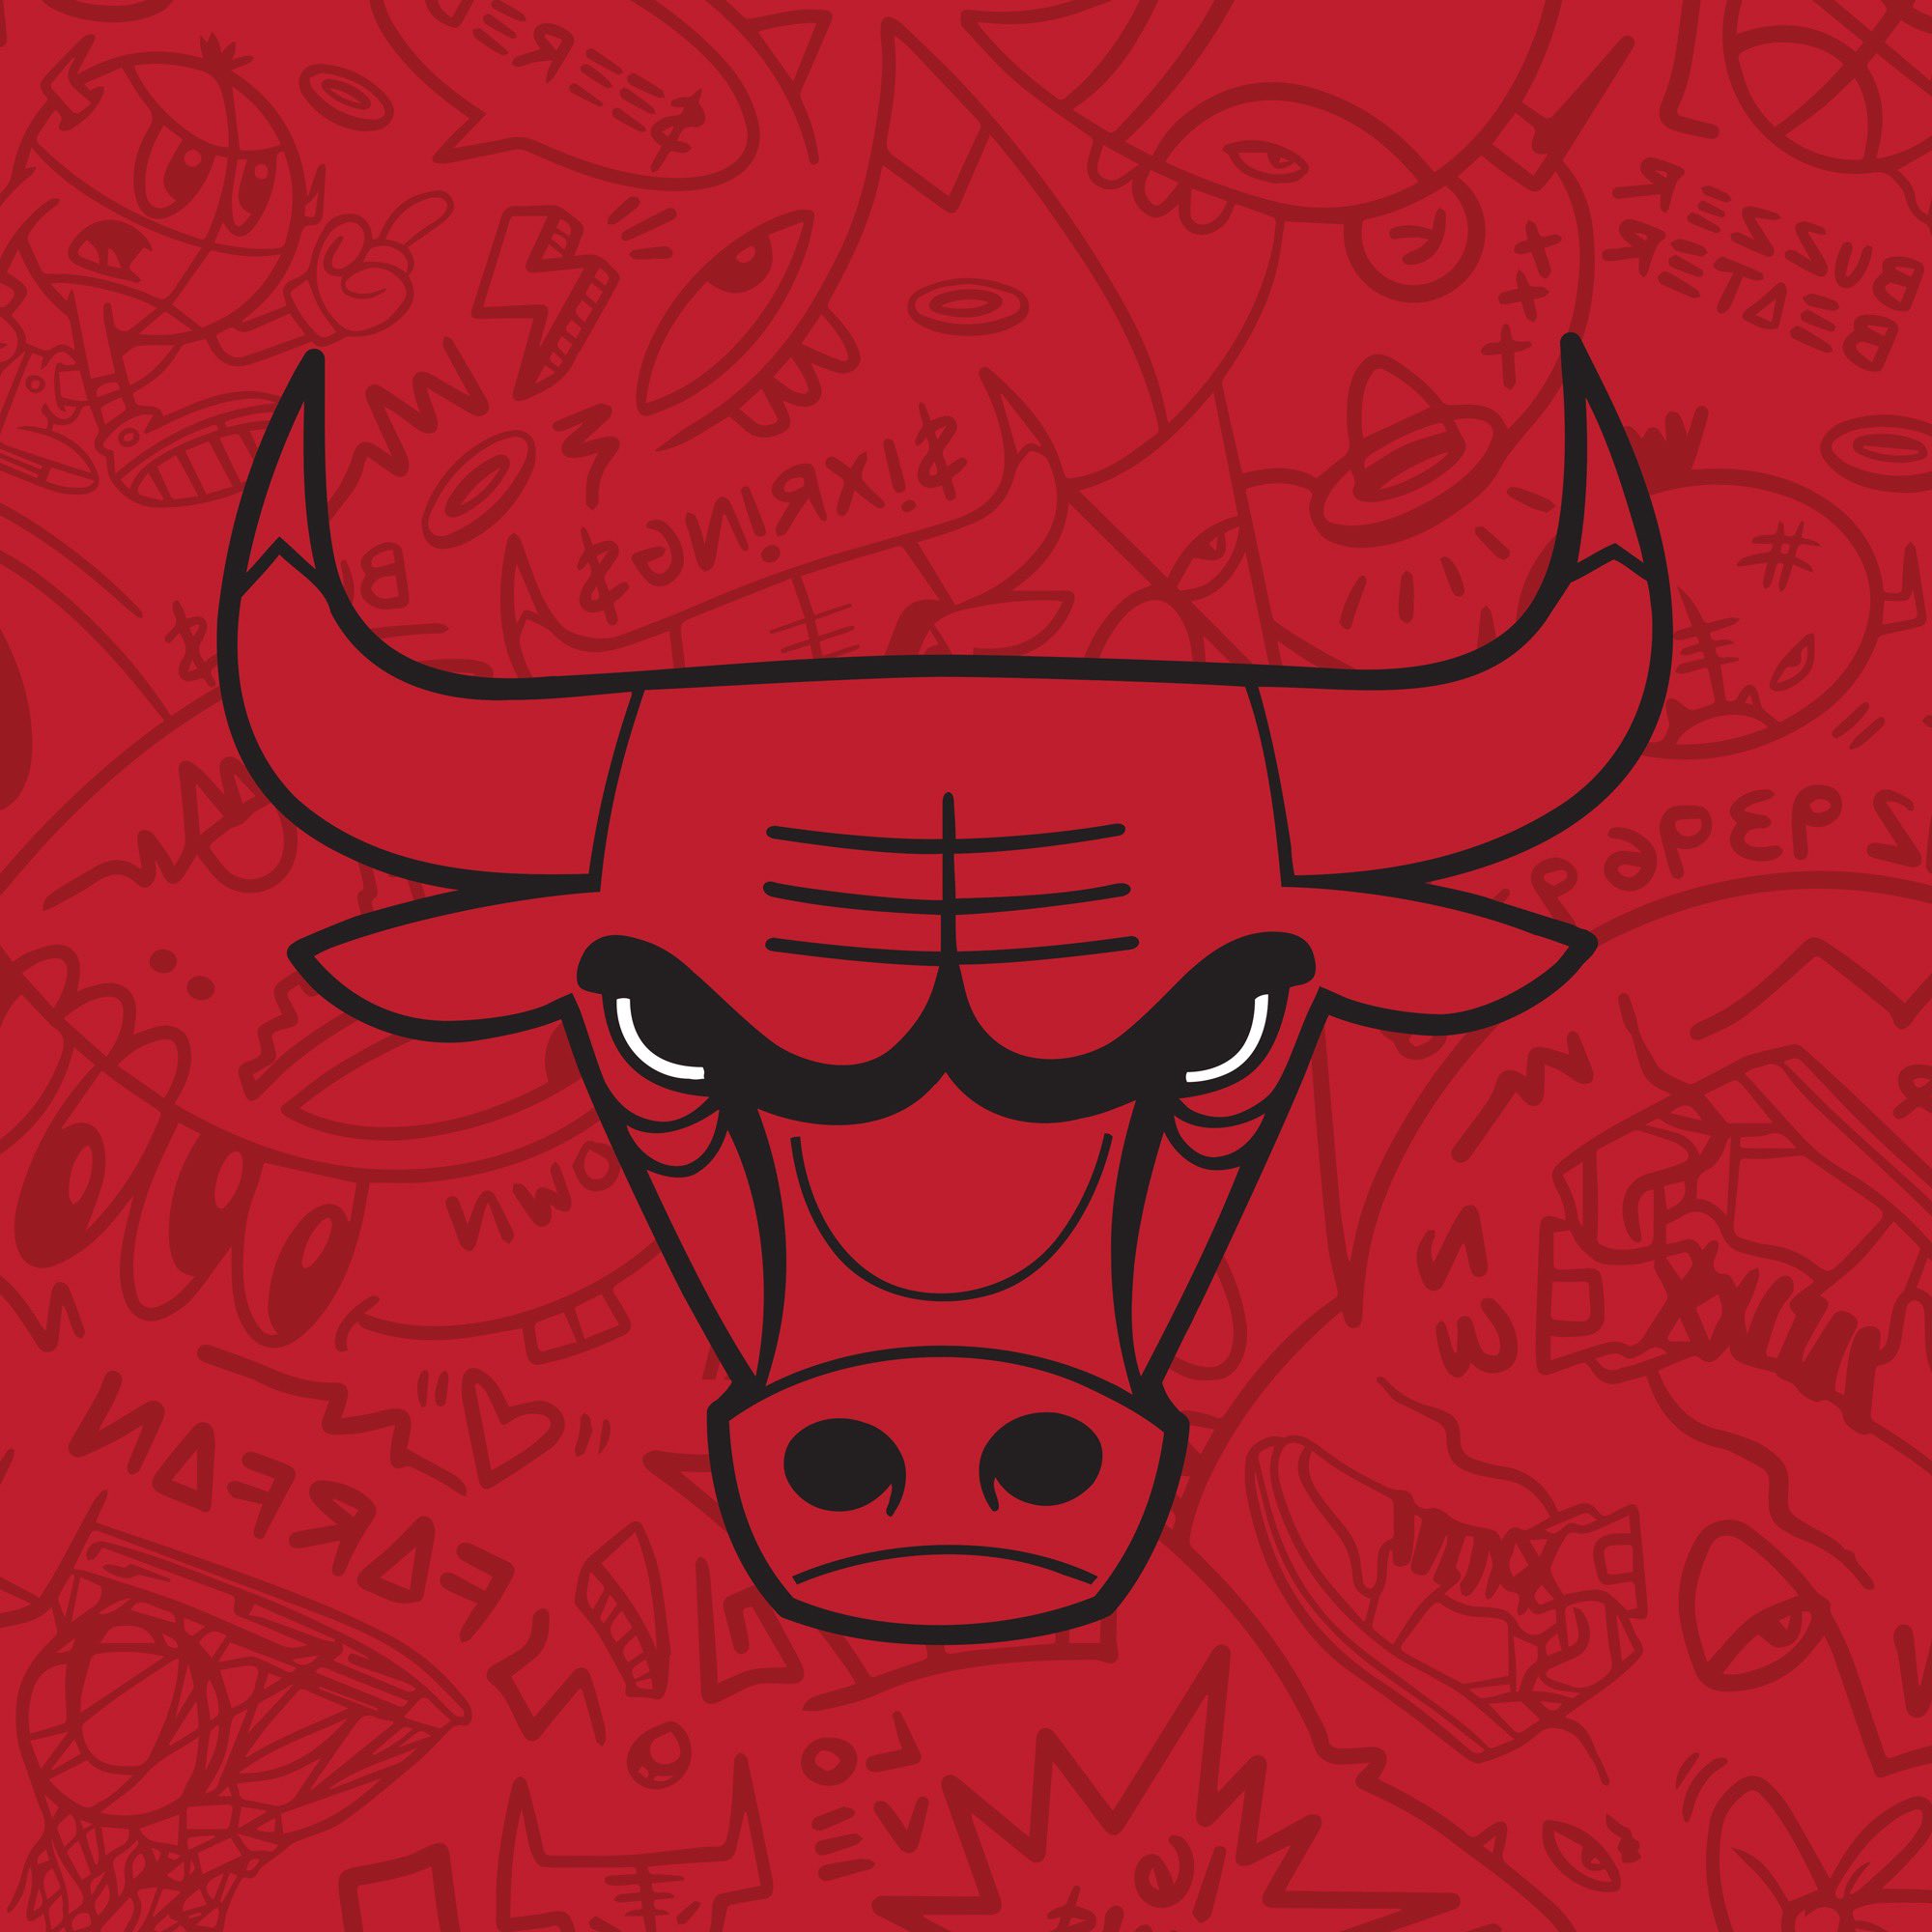 Chicago Bulls Twitter: #SeeRed #SeeRed #NewProfilePic / Twitter